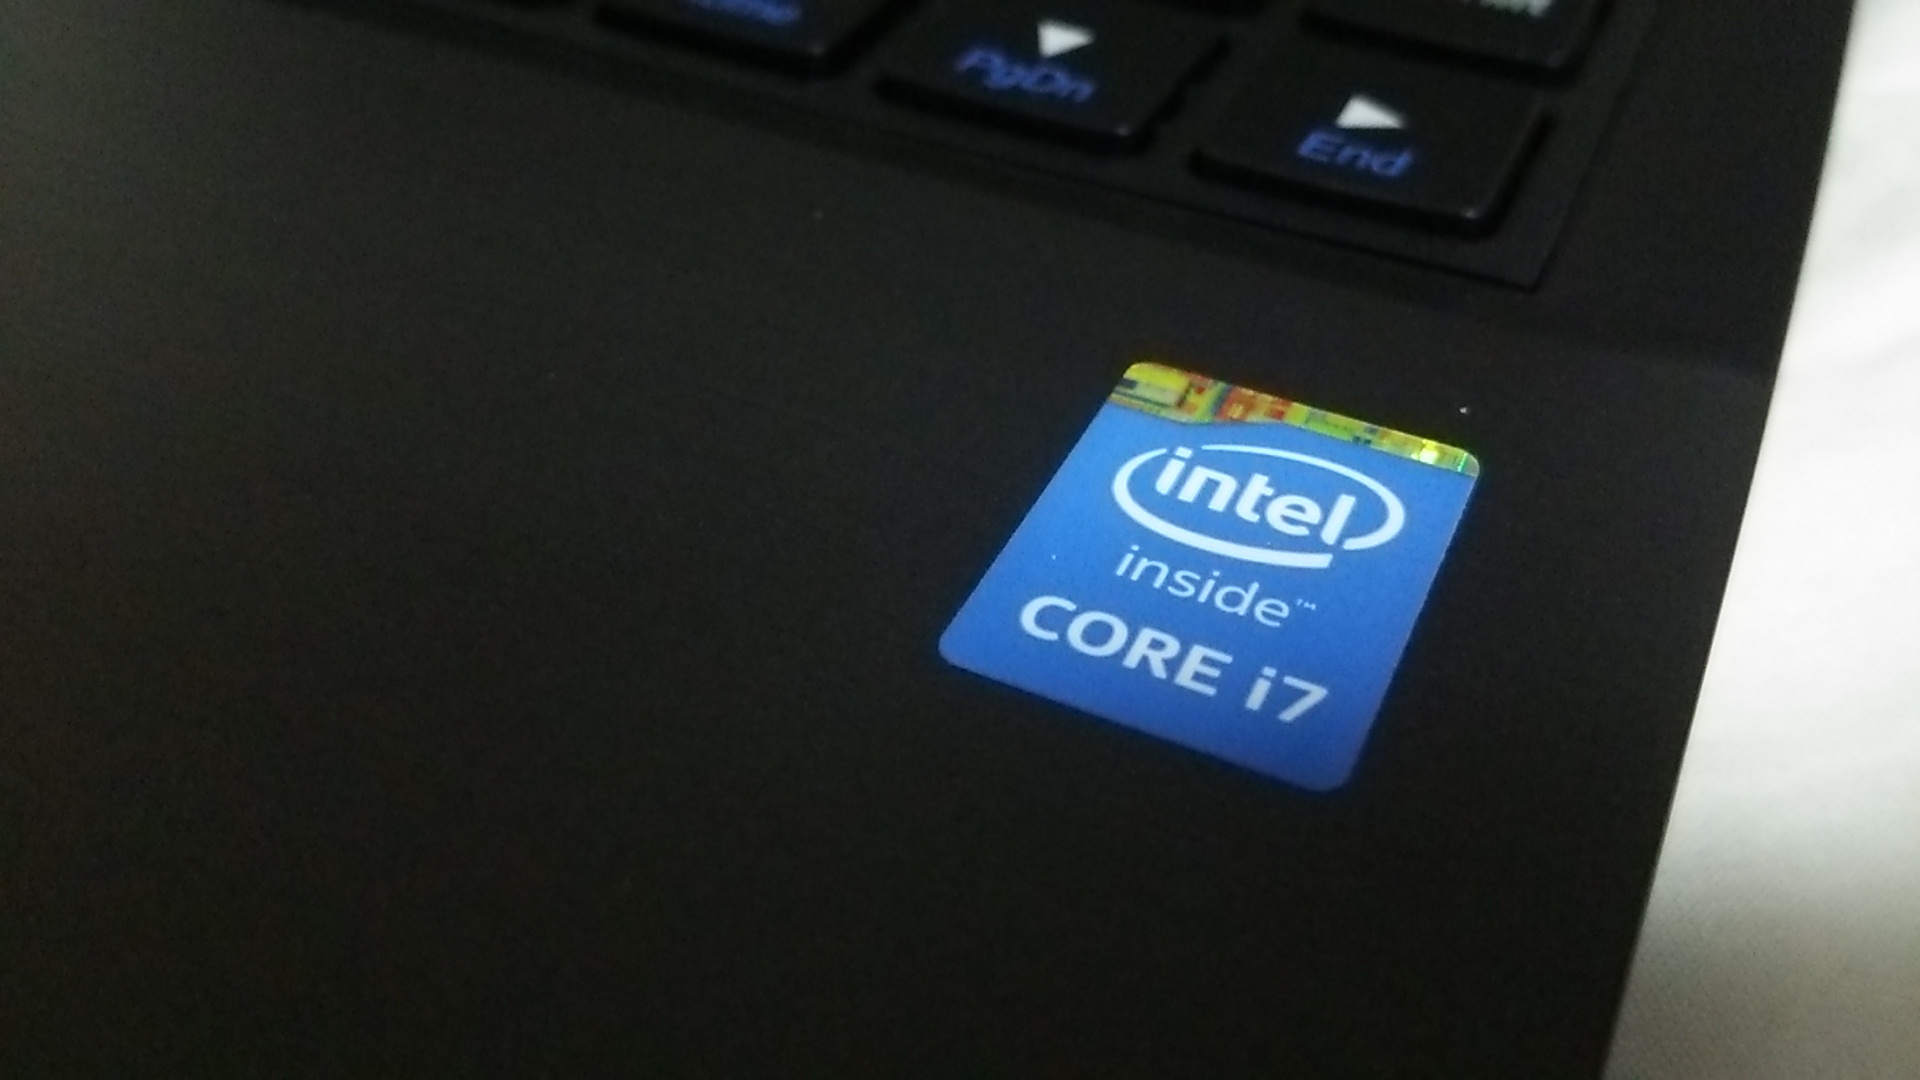 マウスコンピューターLuvBook J外観(Intel Core i7ロゴ)